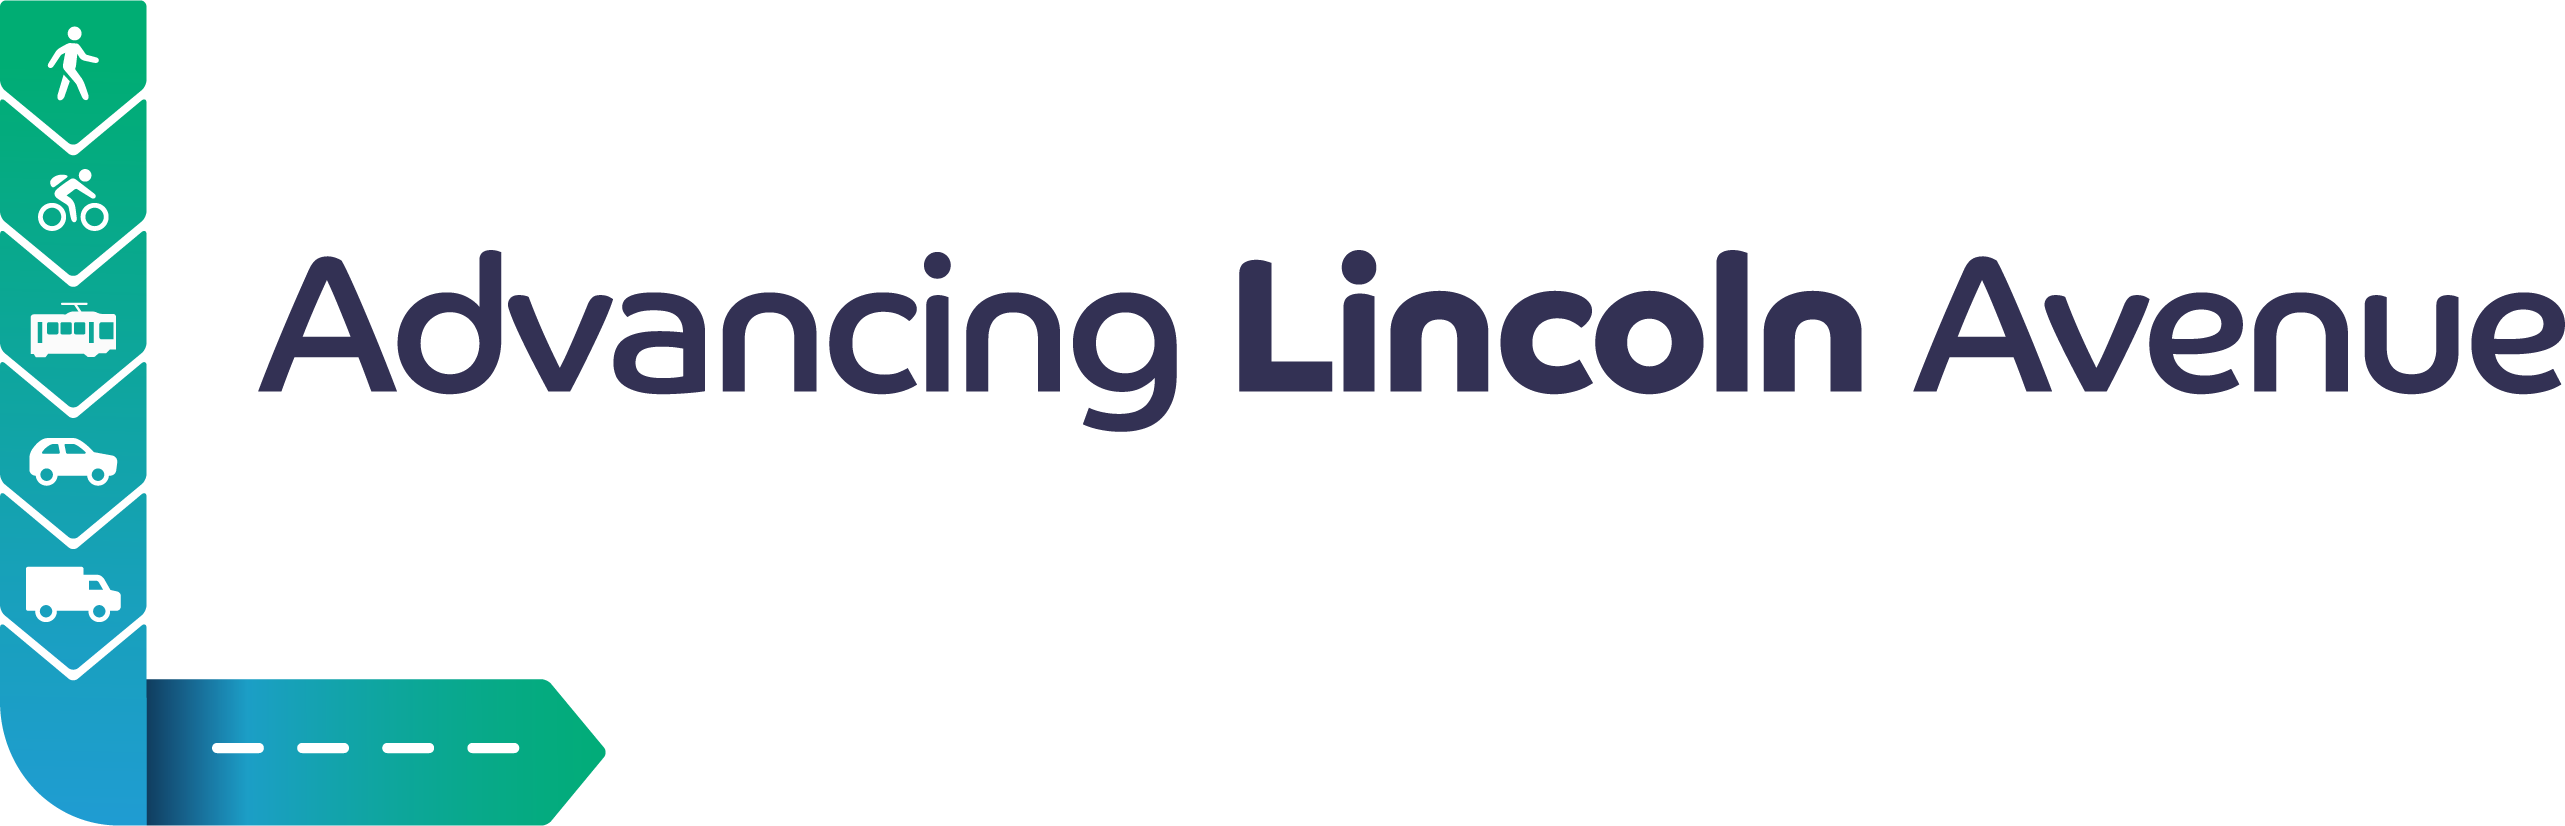 Advancing Lincoln Avenue logo